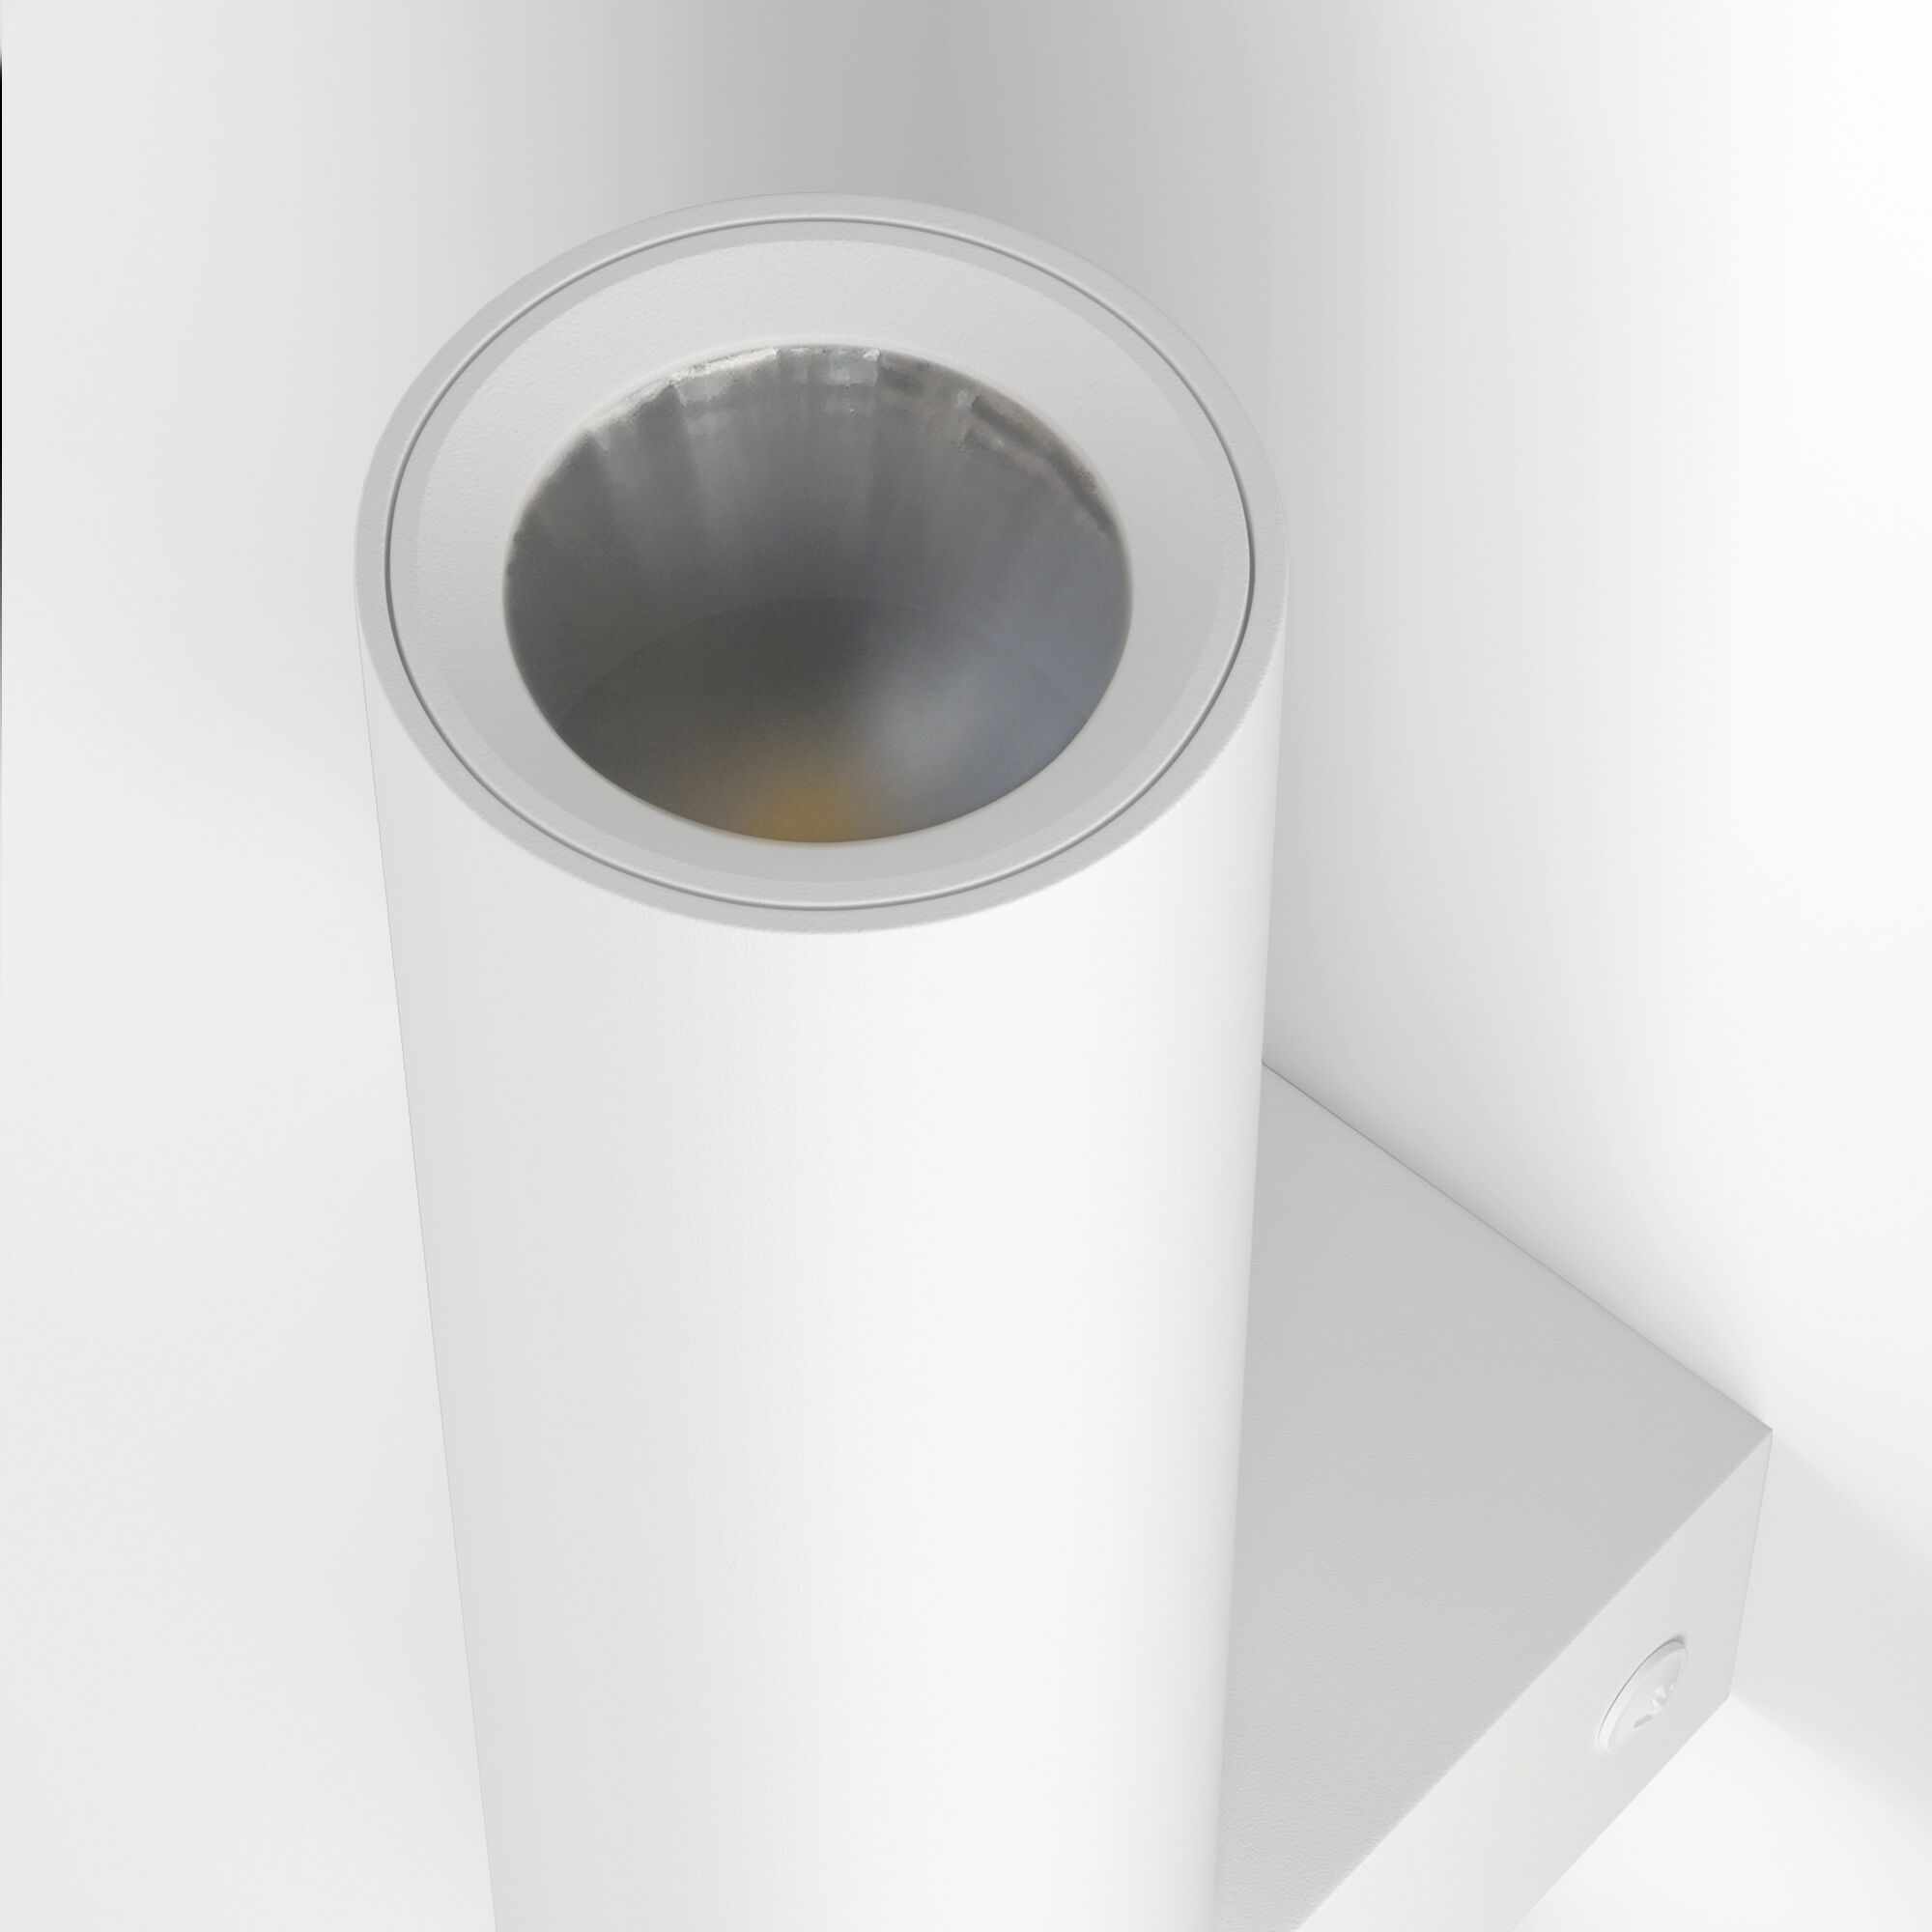 Настенный светильник Eurosvet Pitch a061308 40020/1 LED белый фото